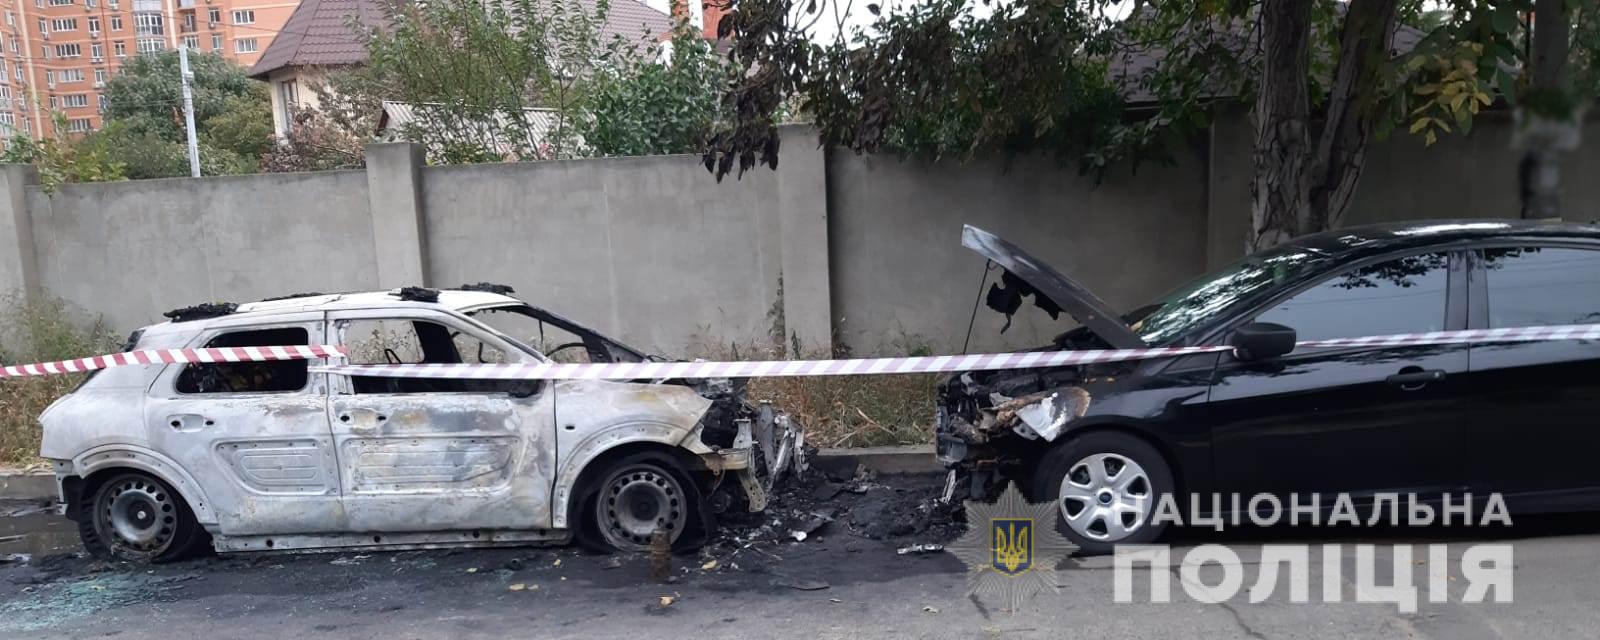 У Київському районі Одеси підпалили два автомобілі 